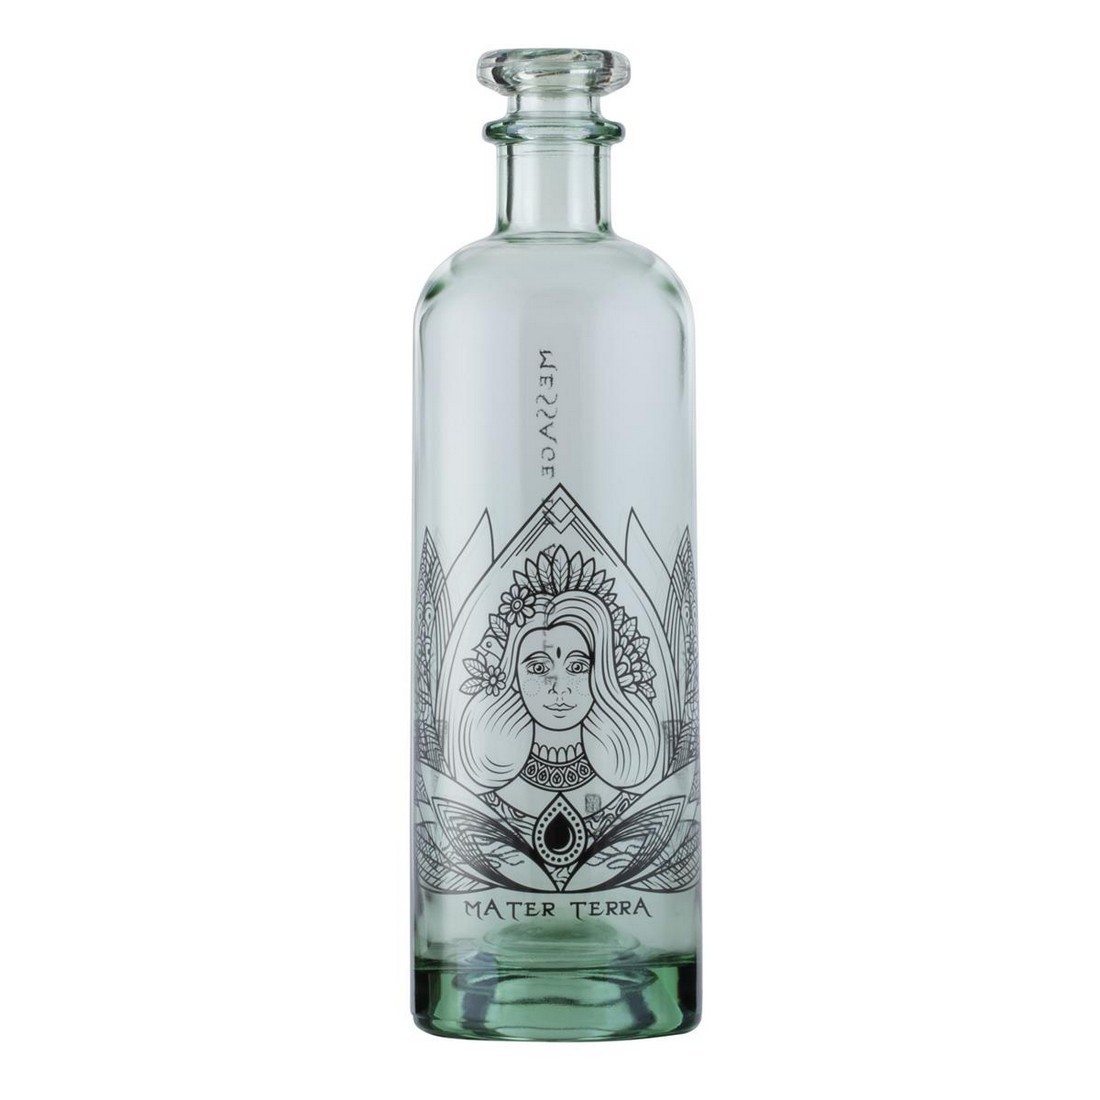 Wild - Message dans une bouteille - Tatouage | Mater Terra 700 ml